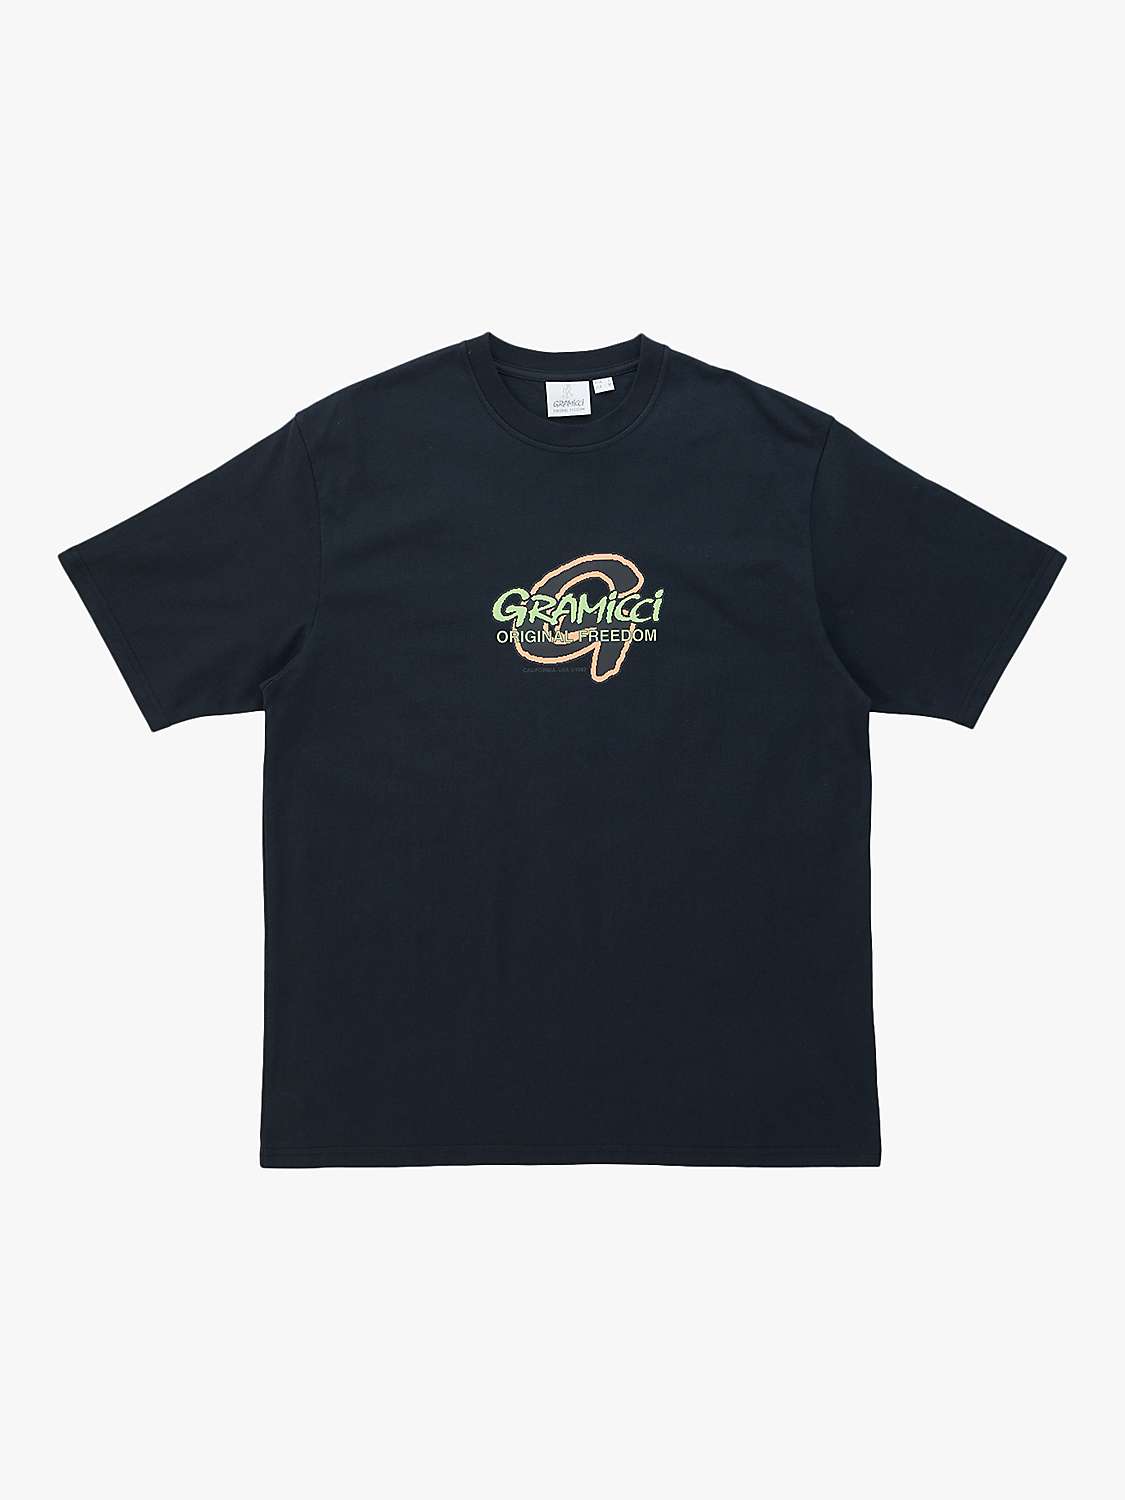 Buy Gramicci Pixel Short Sleeve T-Shirt, Vintage Black Online at johnlewis.com